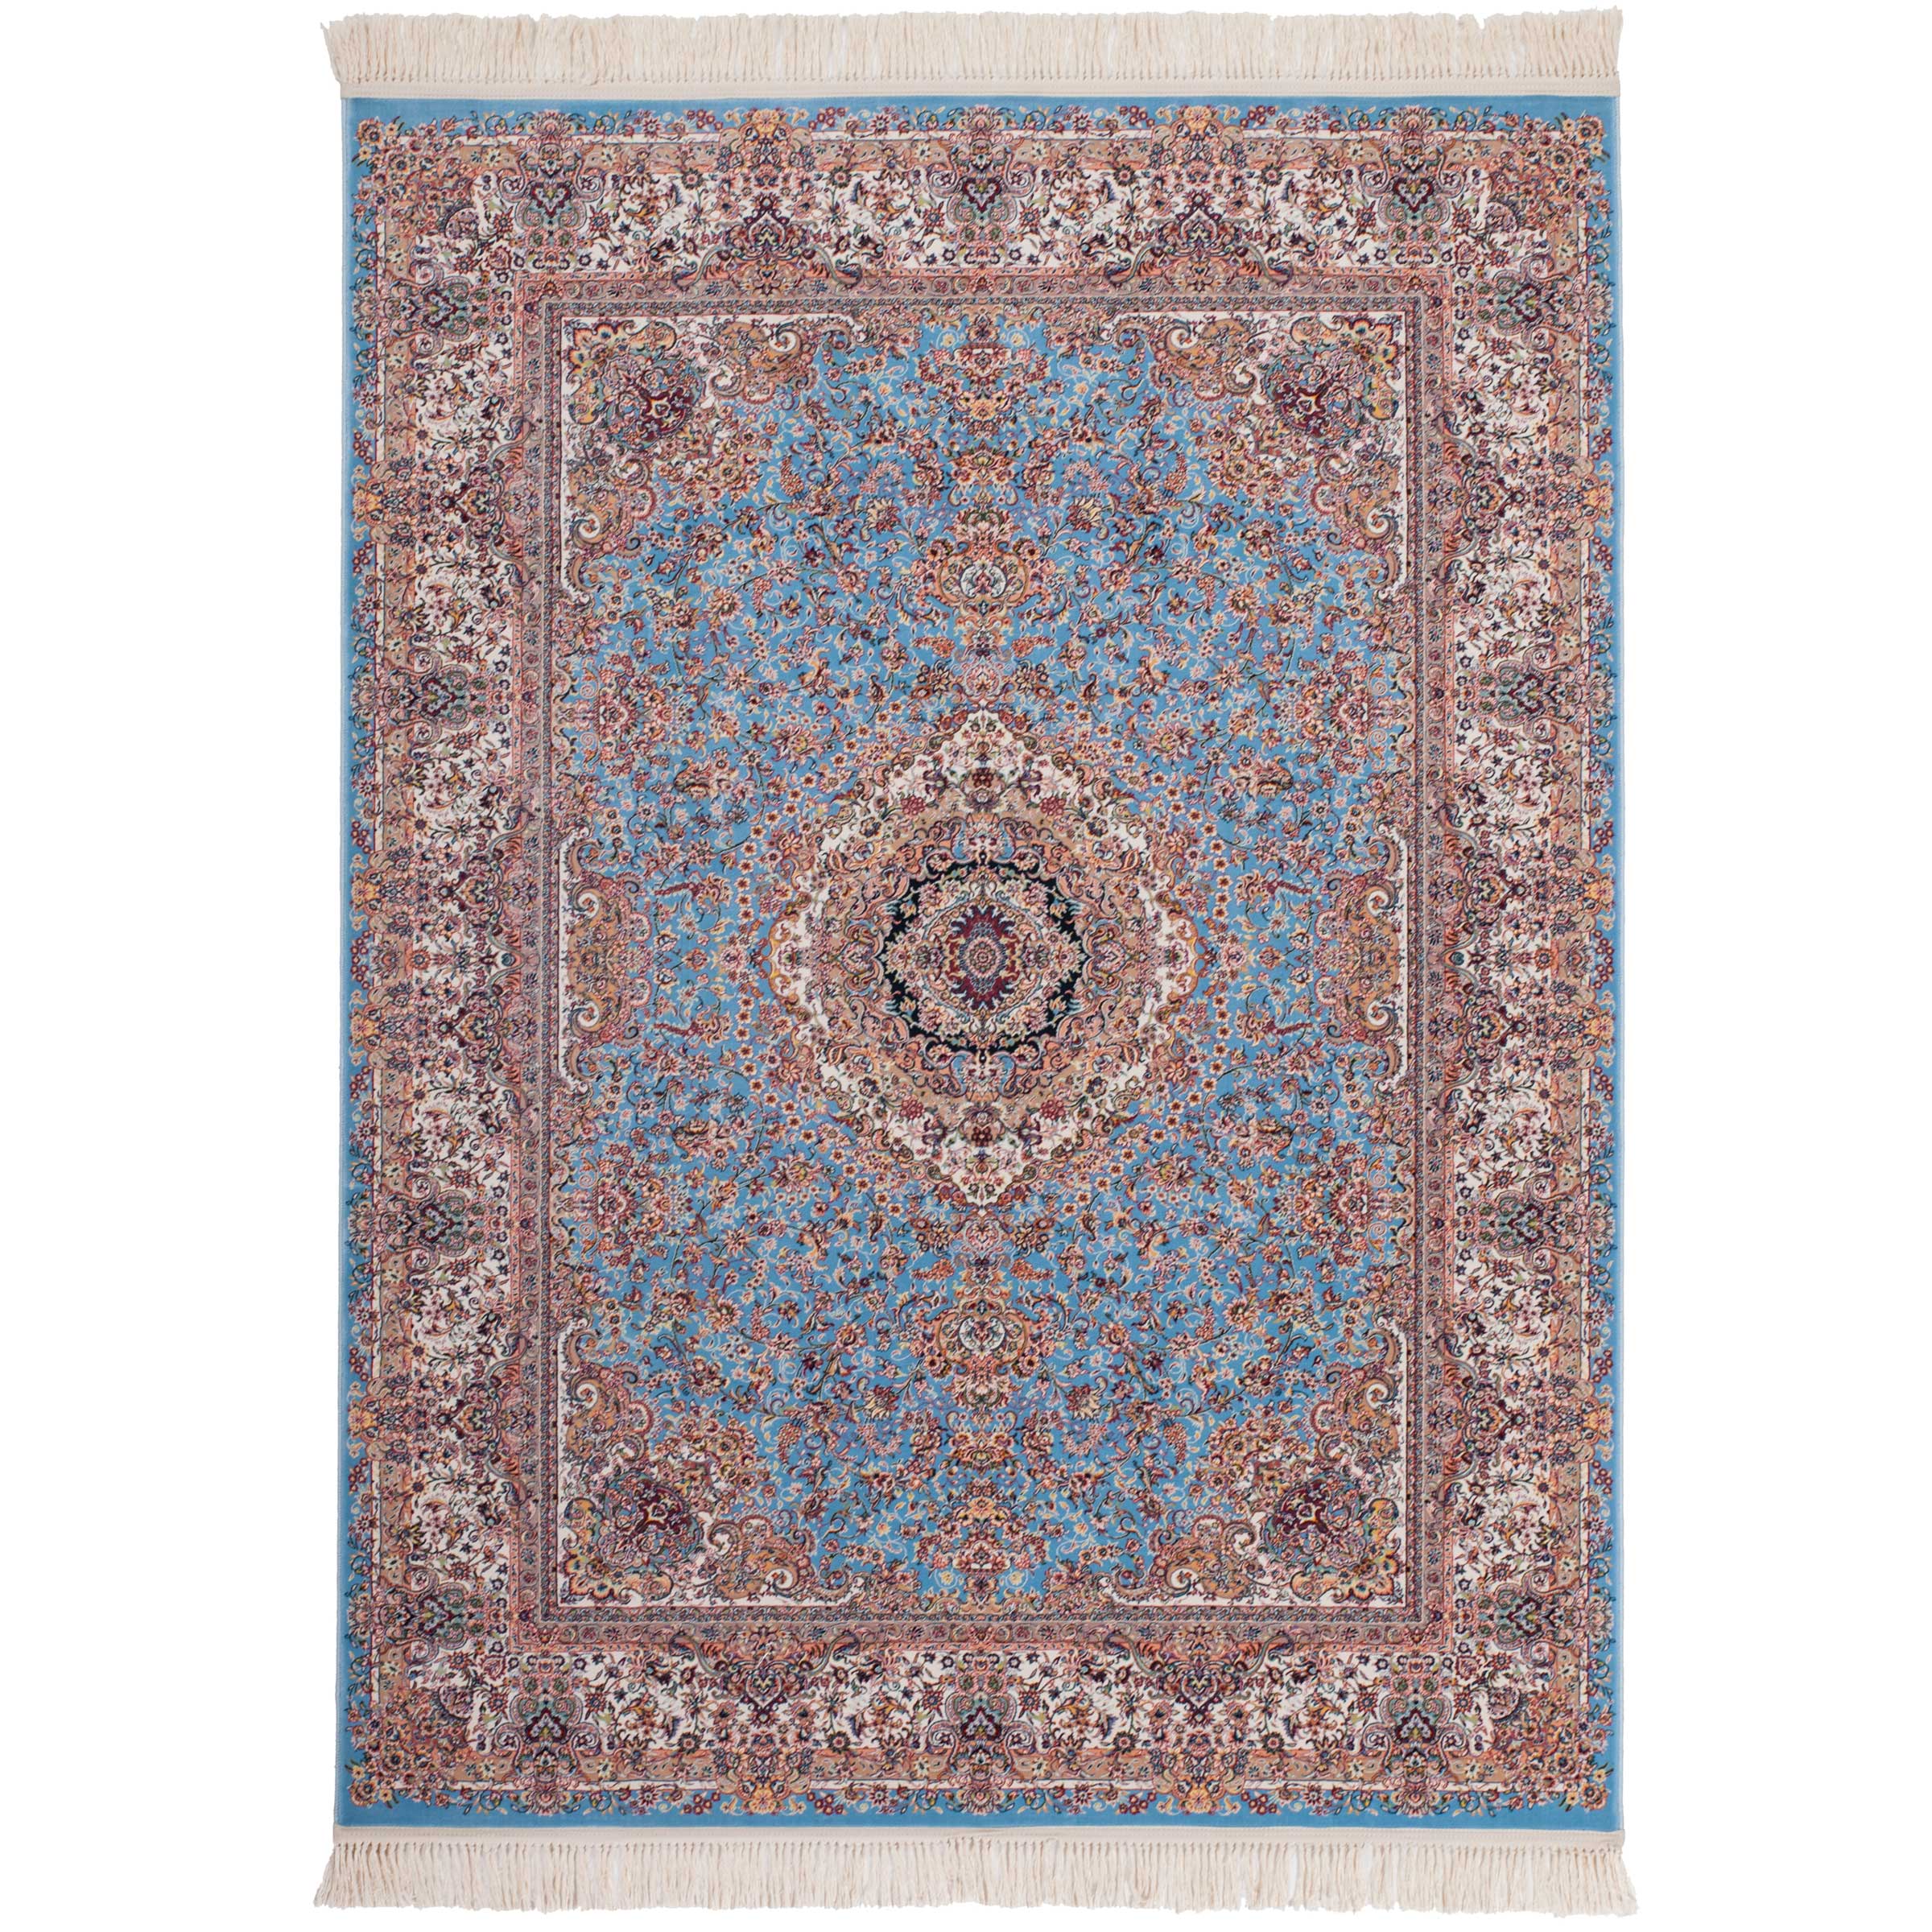 Wonderbaarlijk Blauw Perzisch tapijt kopen? | Perzische tapijten | kameraankleden.nl KI-63